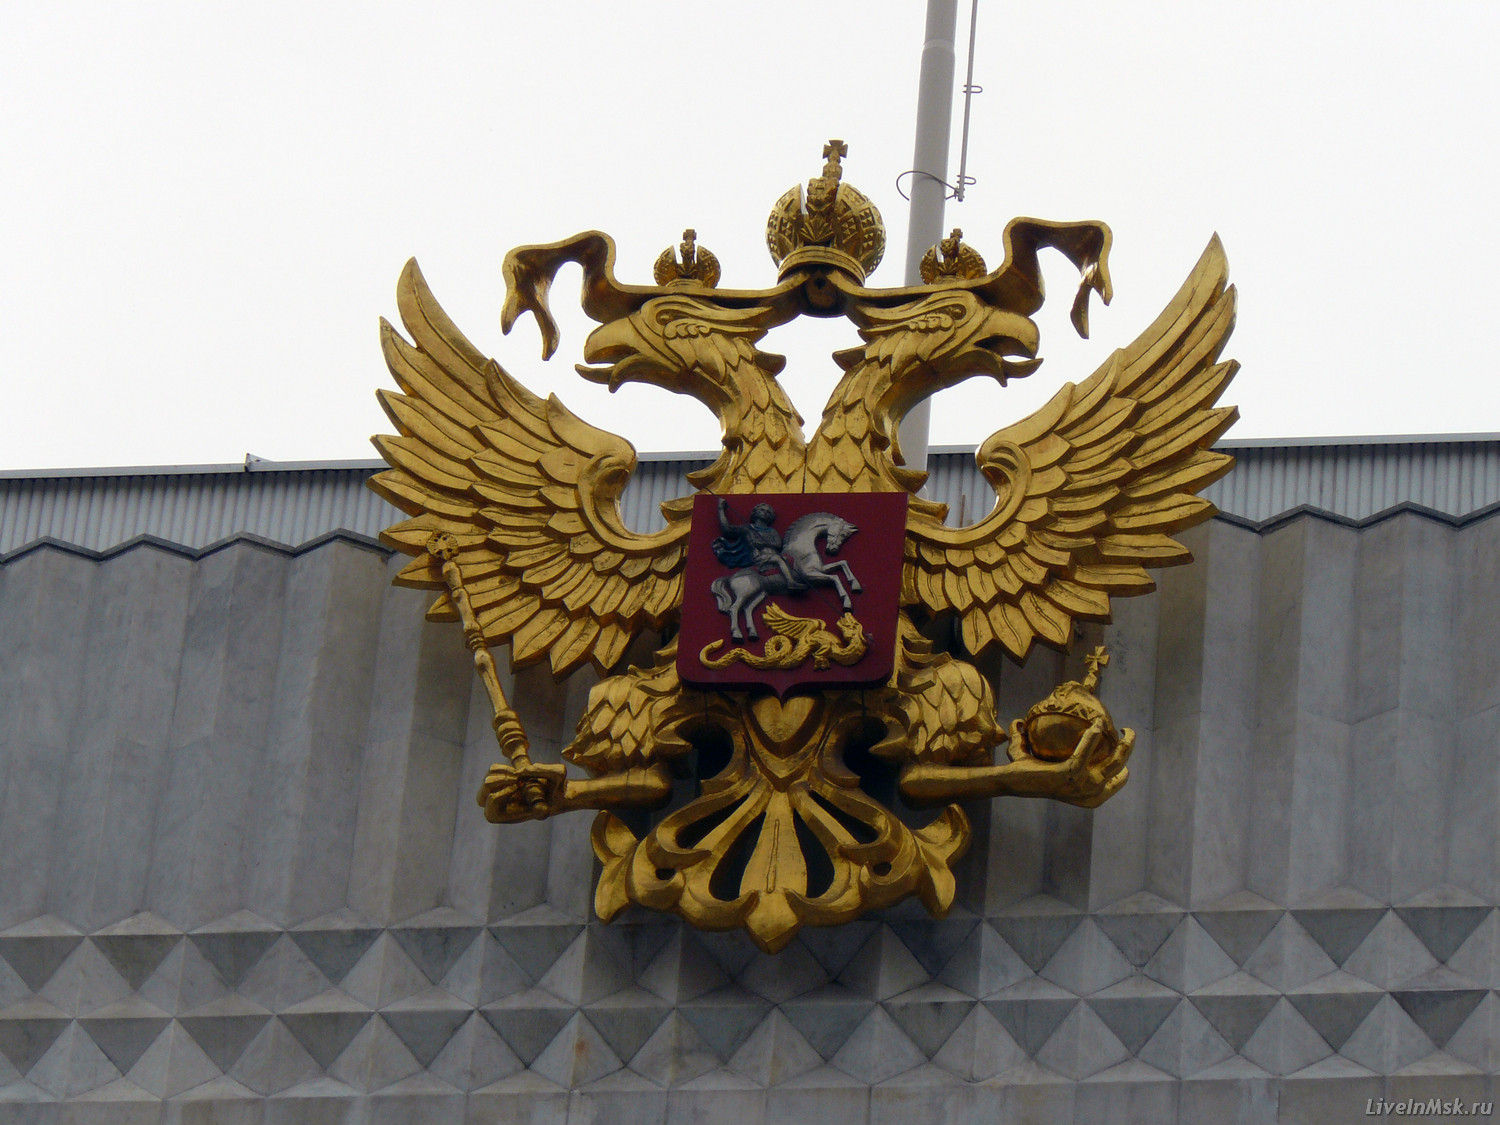 Герб РФ на фасаде Государственного Кремлевского Дворца, фото 2014 года